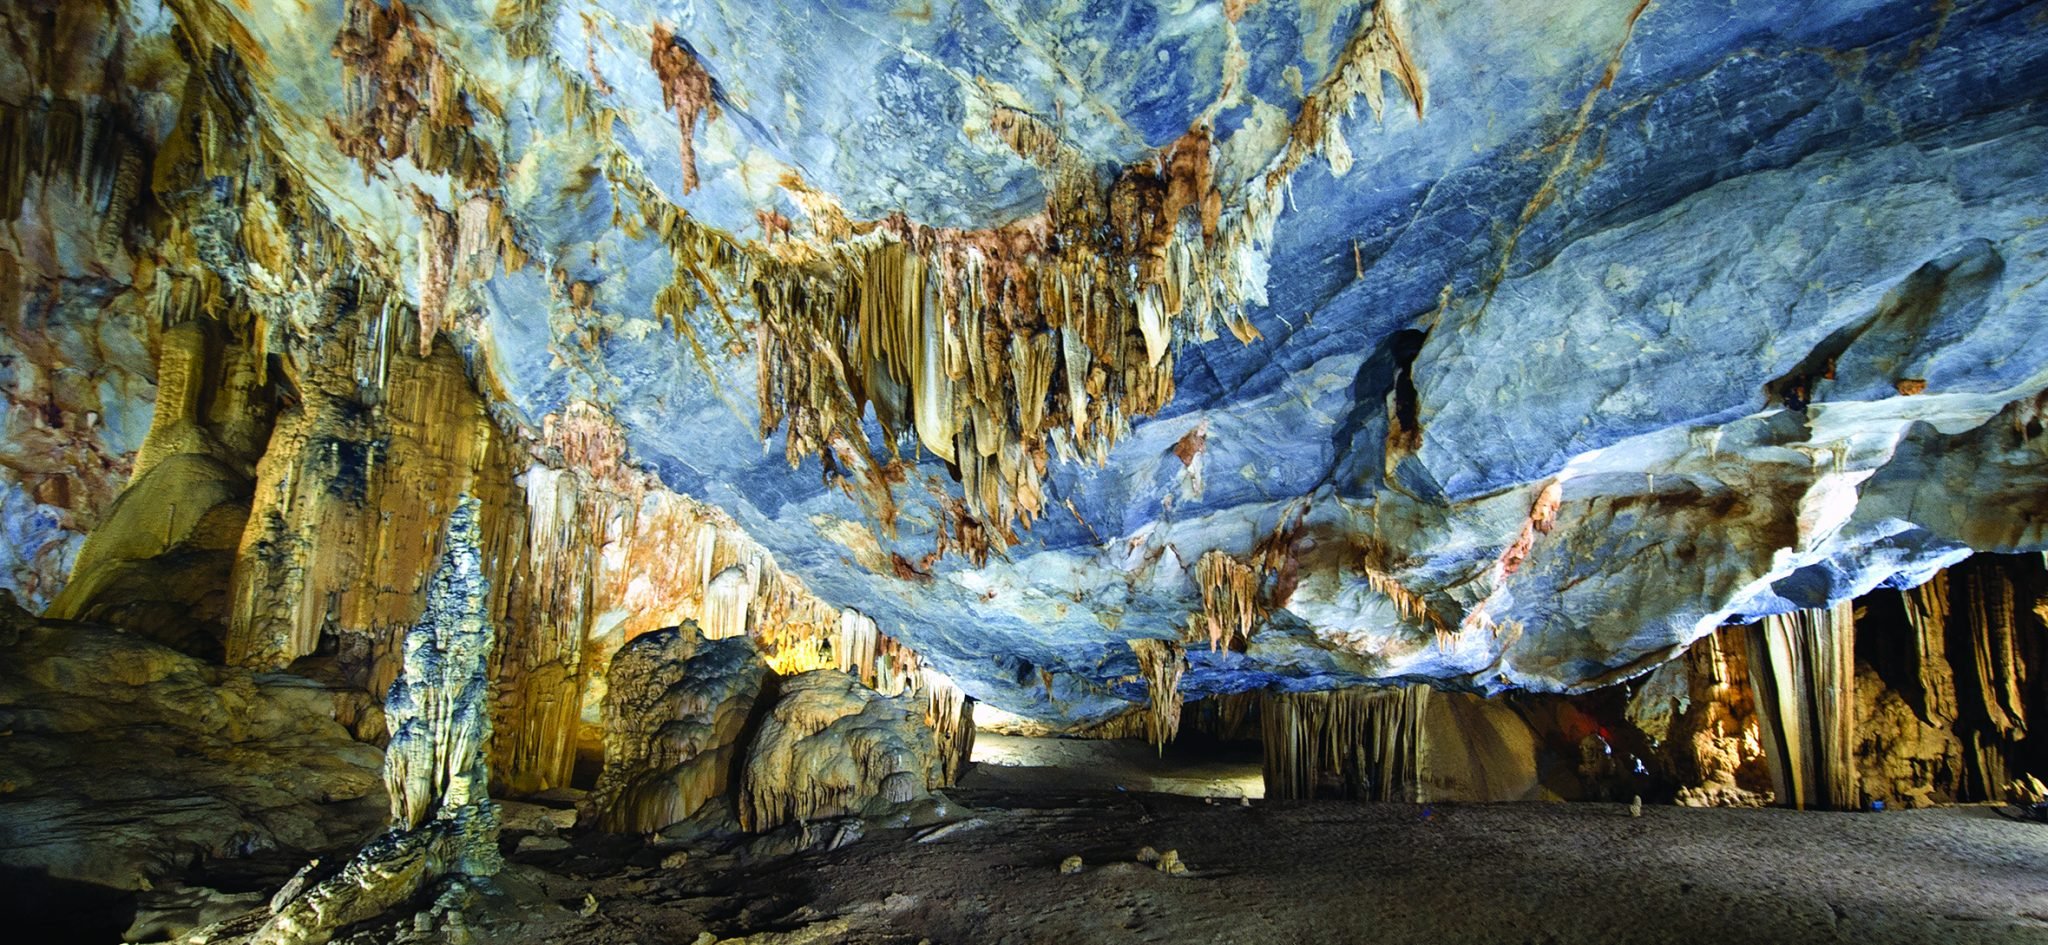 Grotte Thien Duong (Grotte du Paradis)